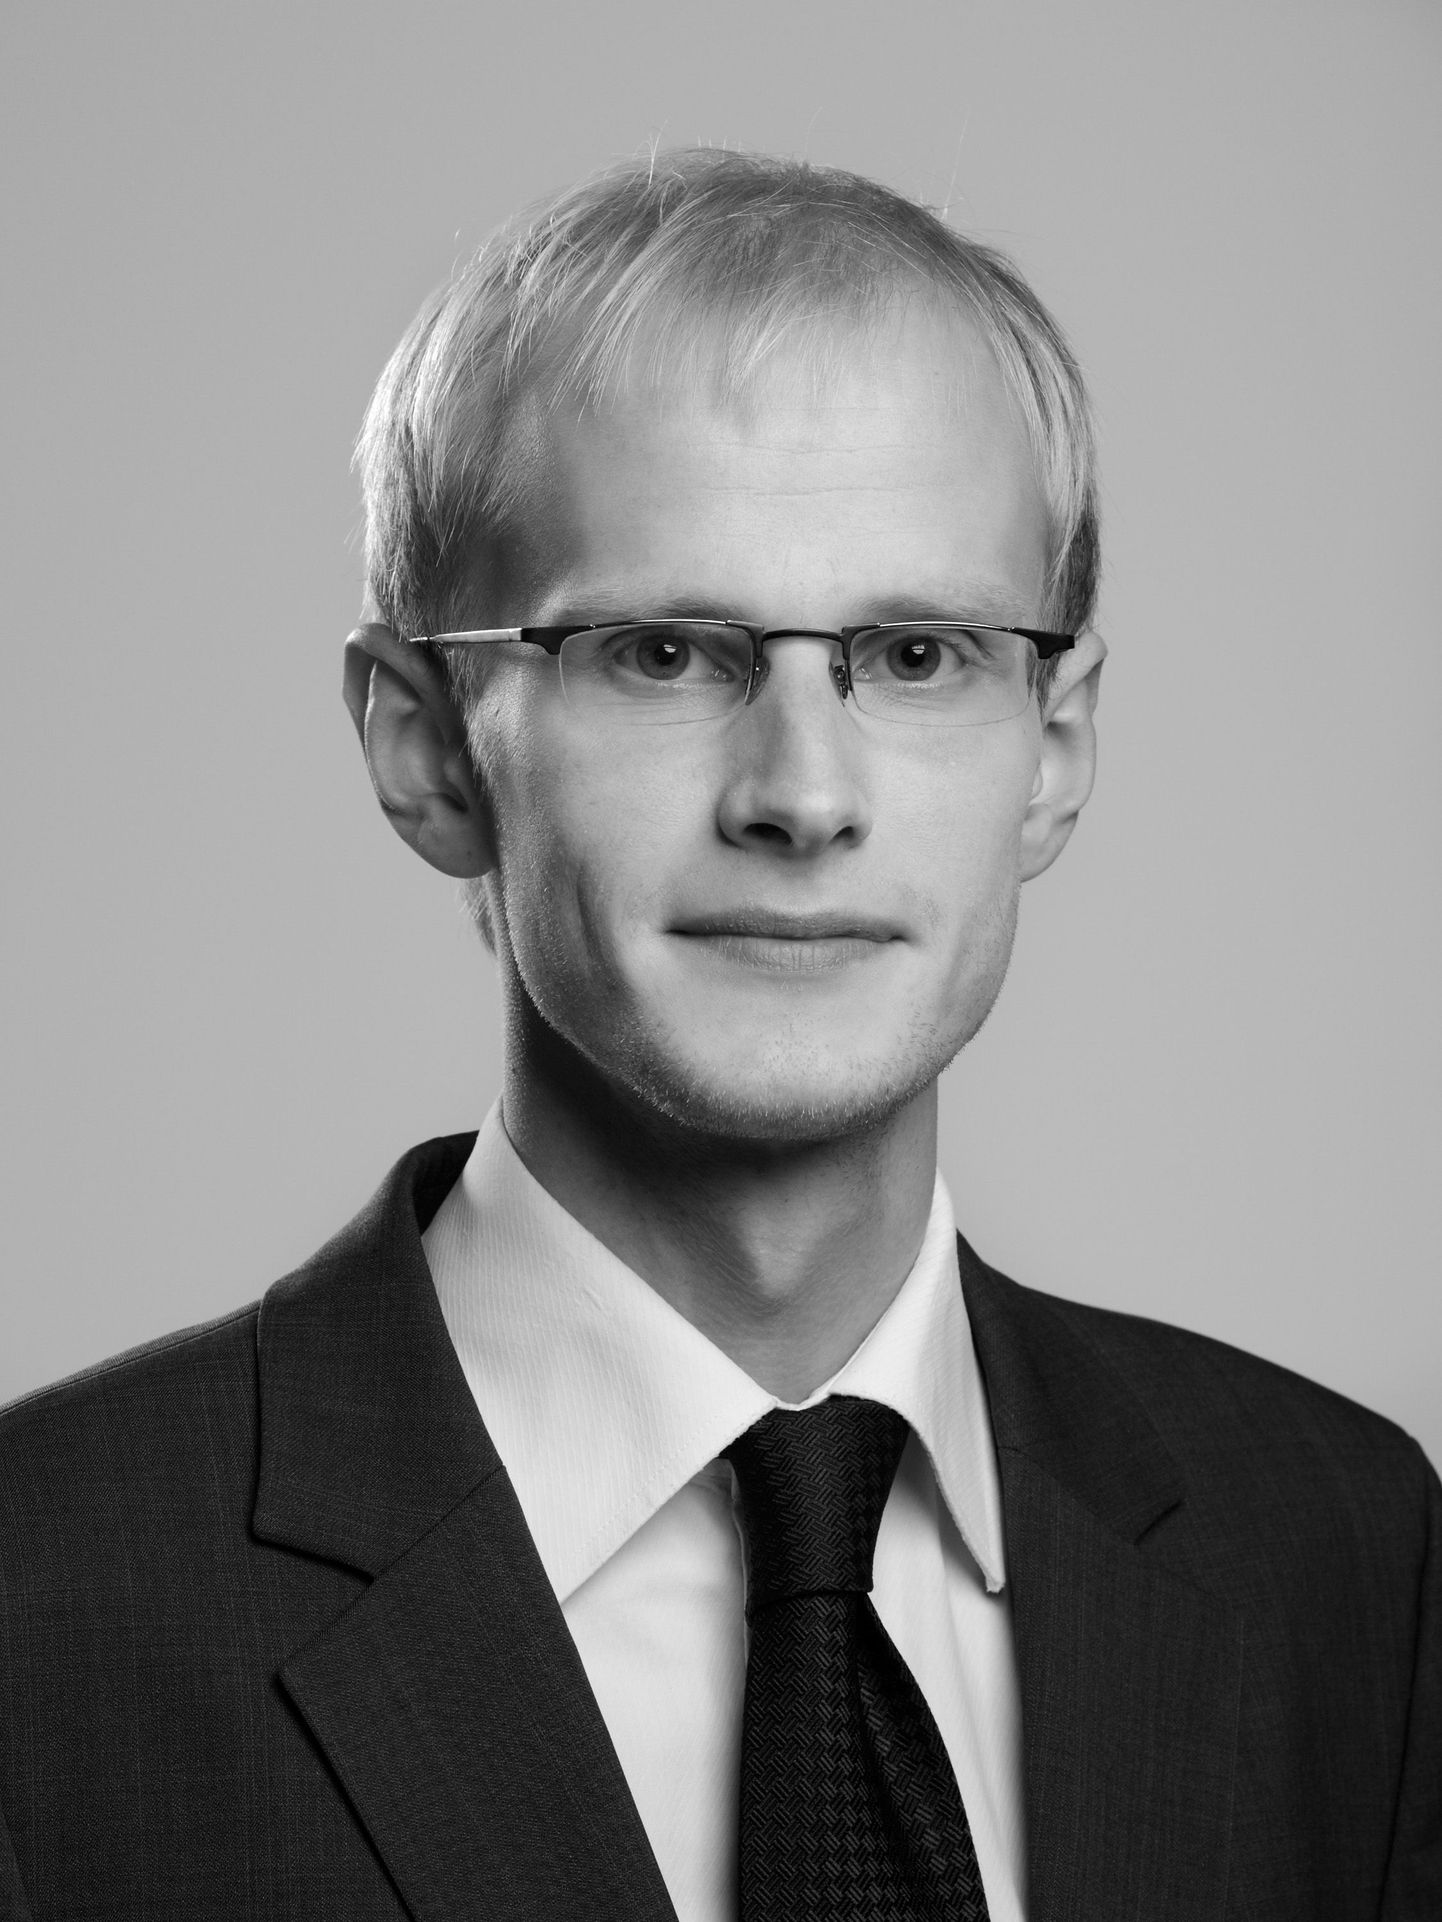 Kohtus Eesti Energia üle võidu saavutanud Glikman ja Partnerid advokaadibüroo advokaat Paul Keres.